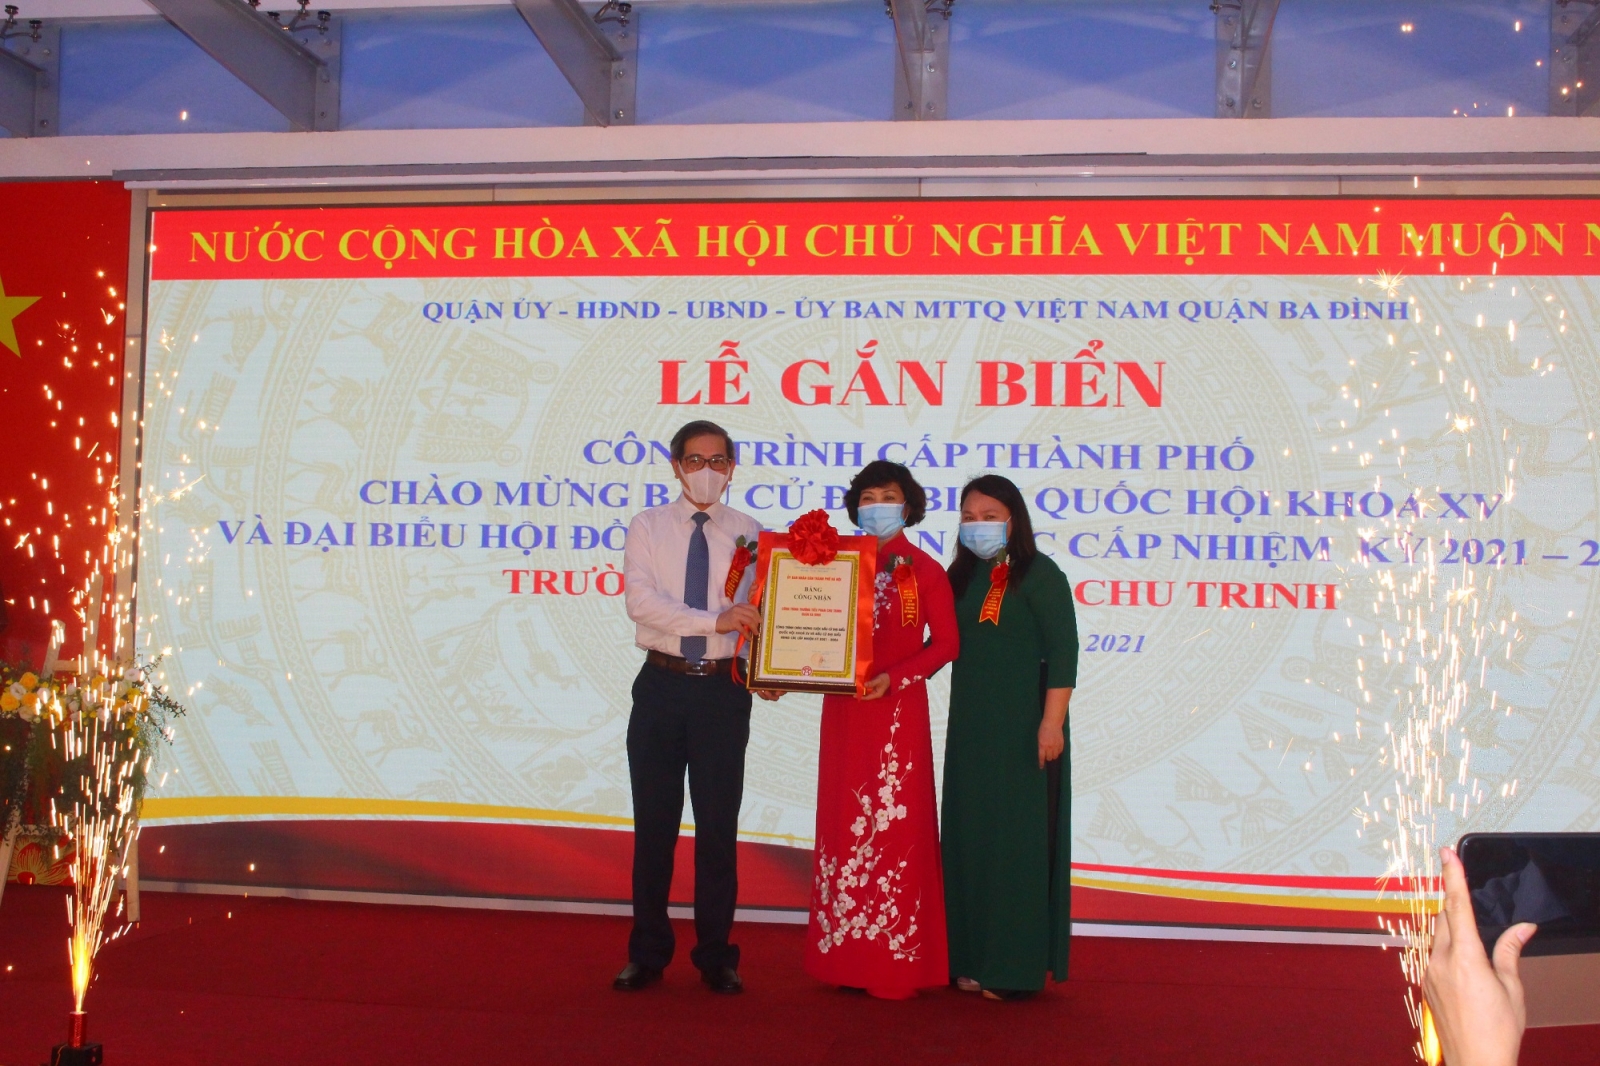 Hà Nội: Gắn biển công trình trường học cấp thành phố chào mừng Bầu cử  - Ảnh minh hoạ 3